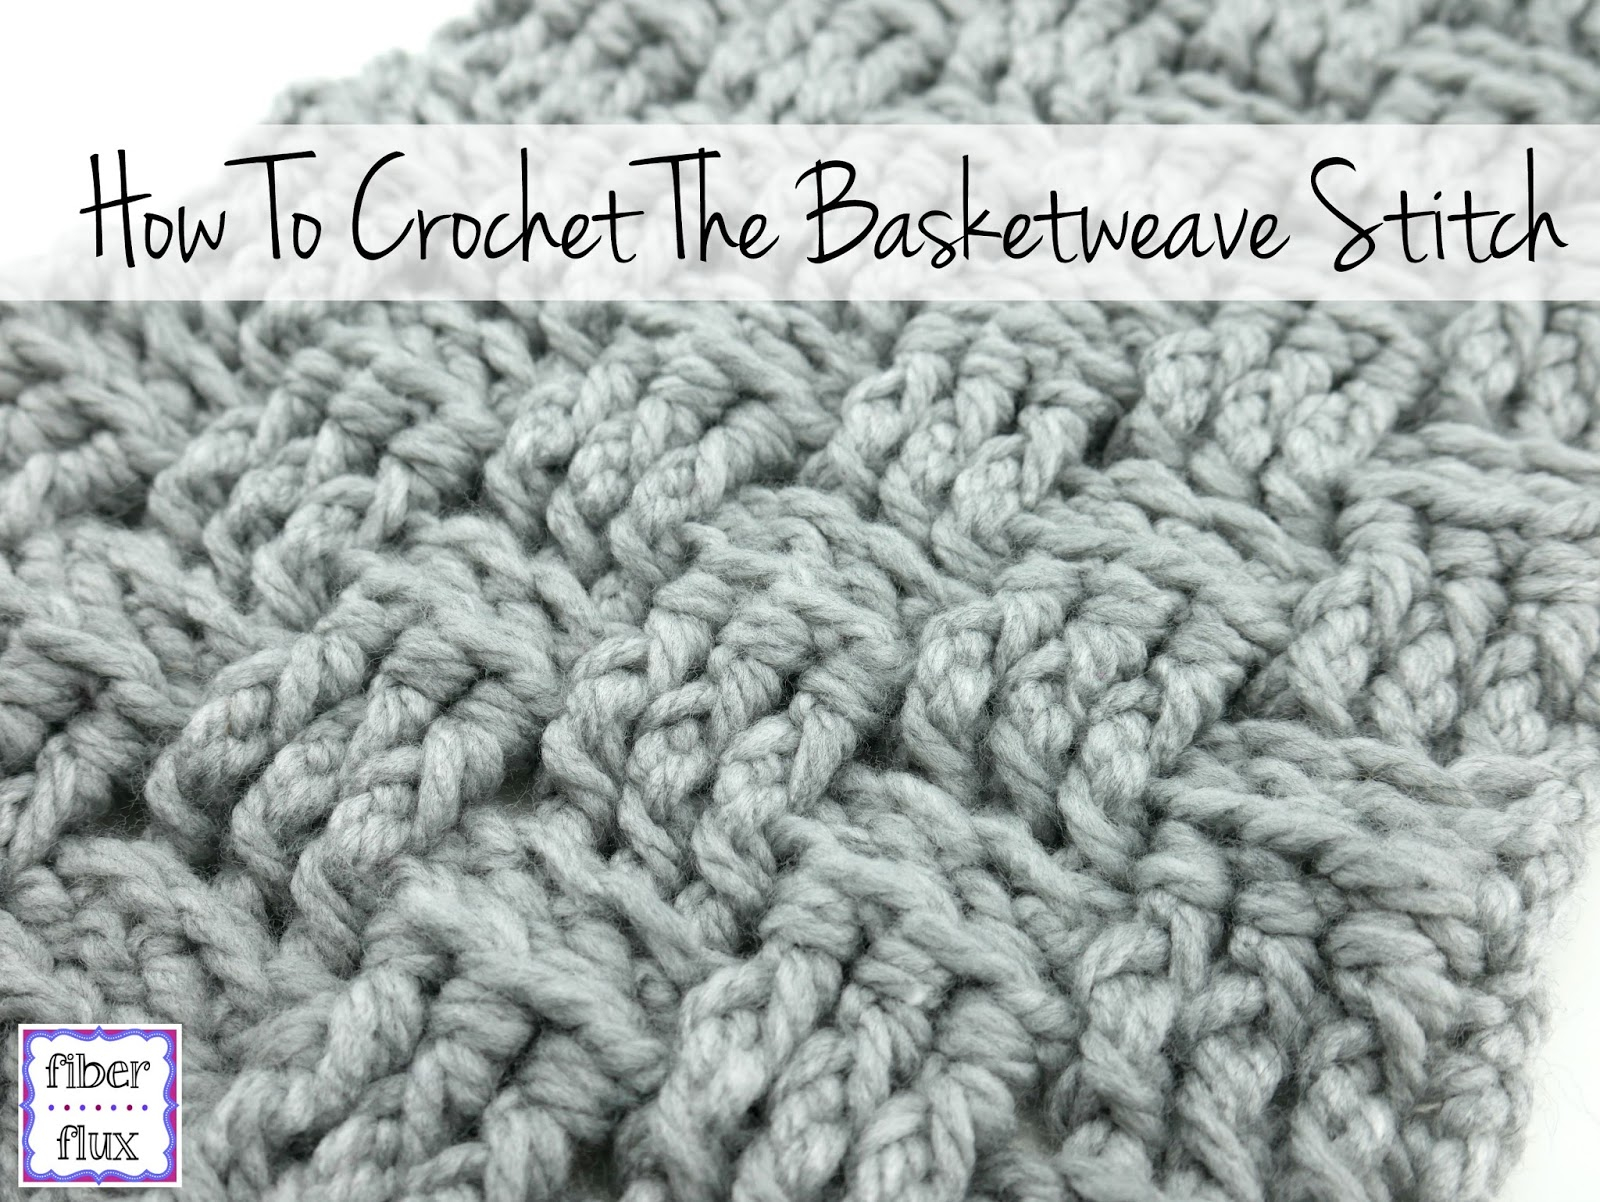 Easy Basket Weave Crochet Pattern Fiber Flux How To Crochet The Basketweave Stitch